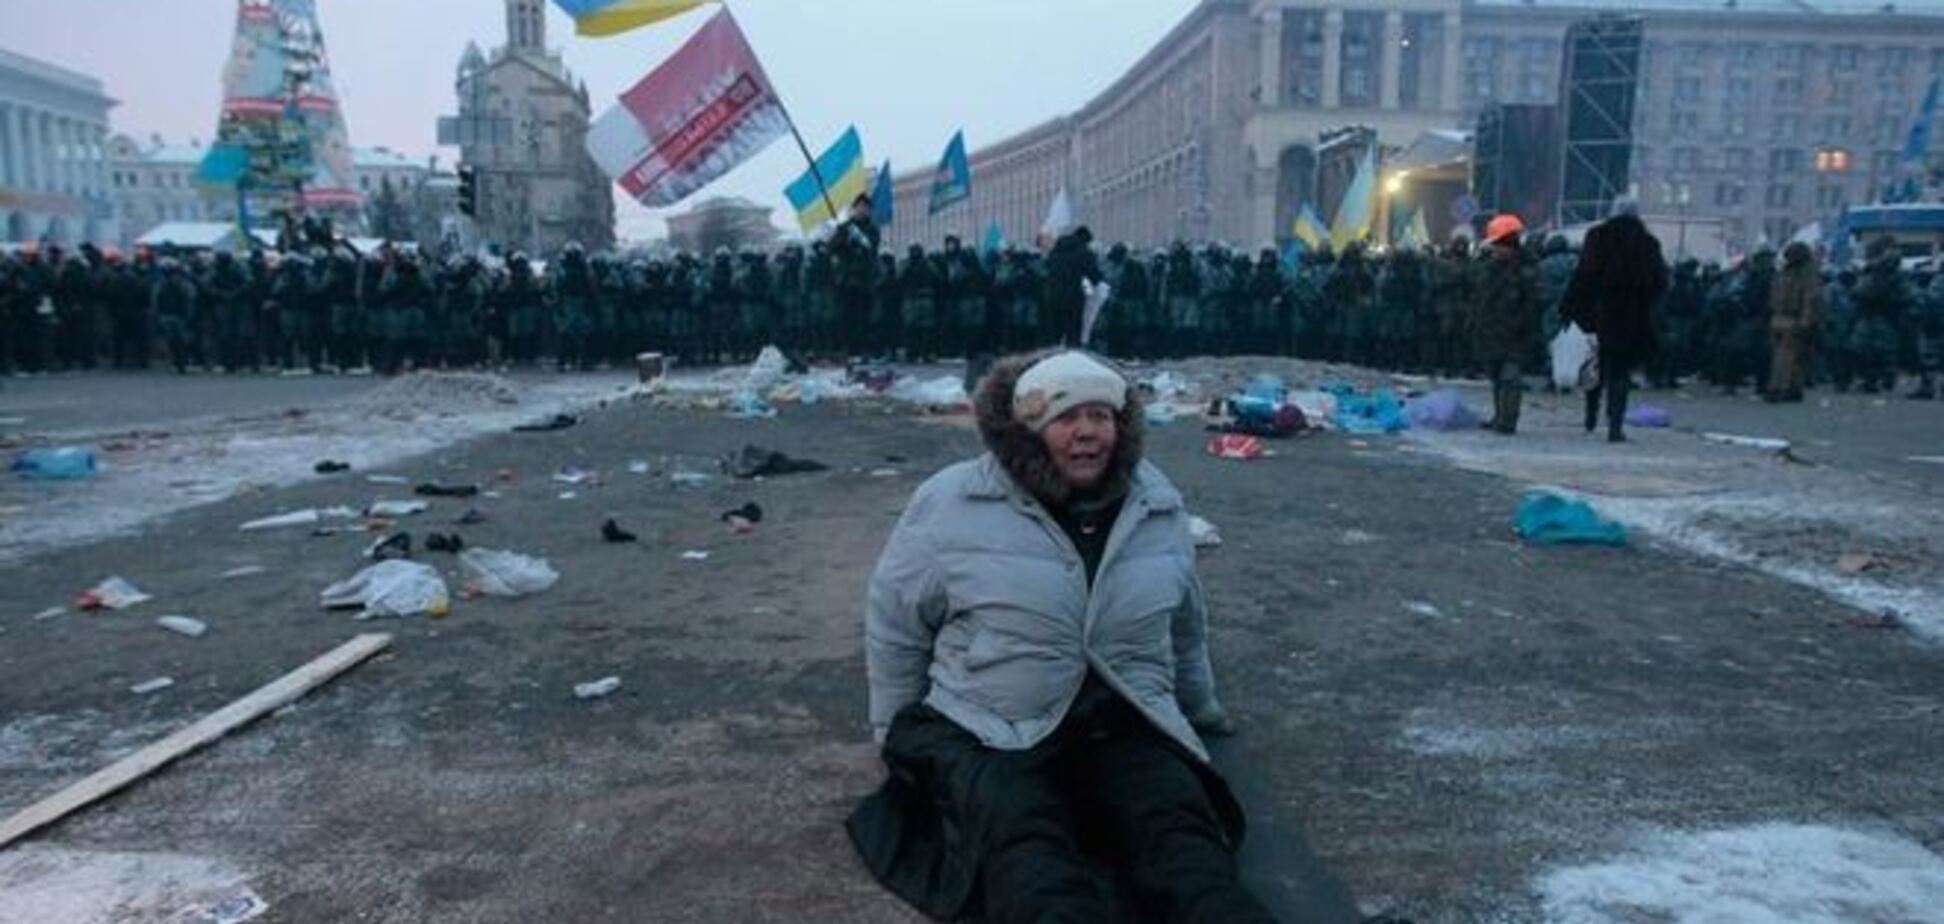 Примерно равное число украинцев считают Евромайдан 'борьбой за права' и 'госпереворотом'